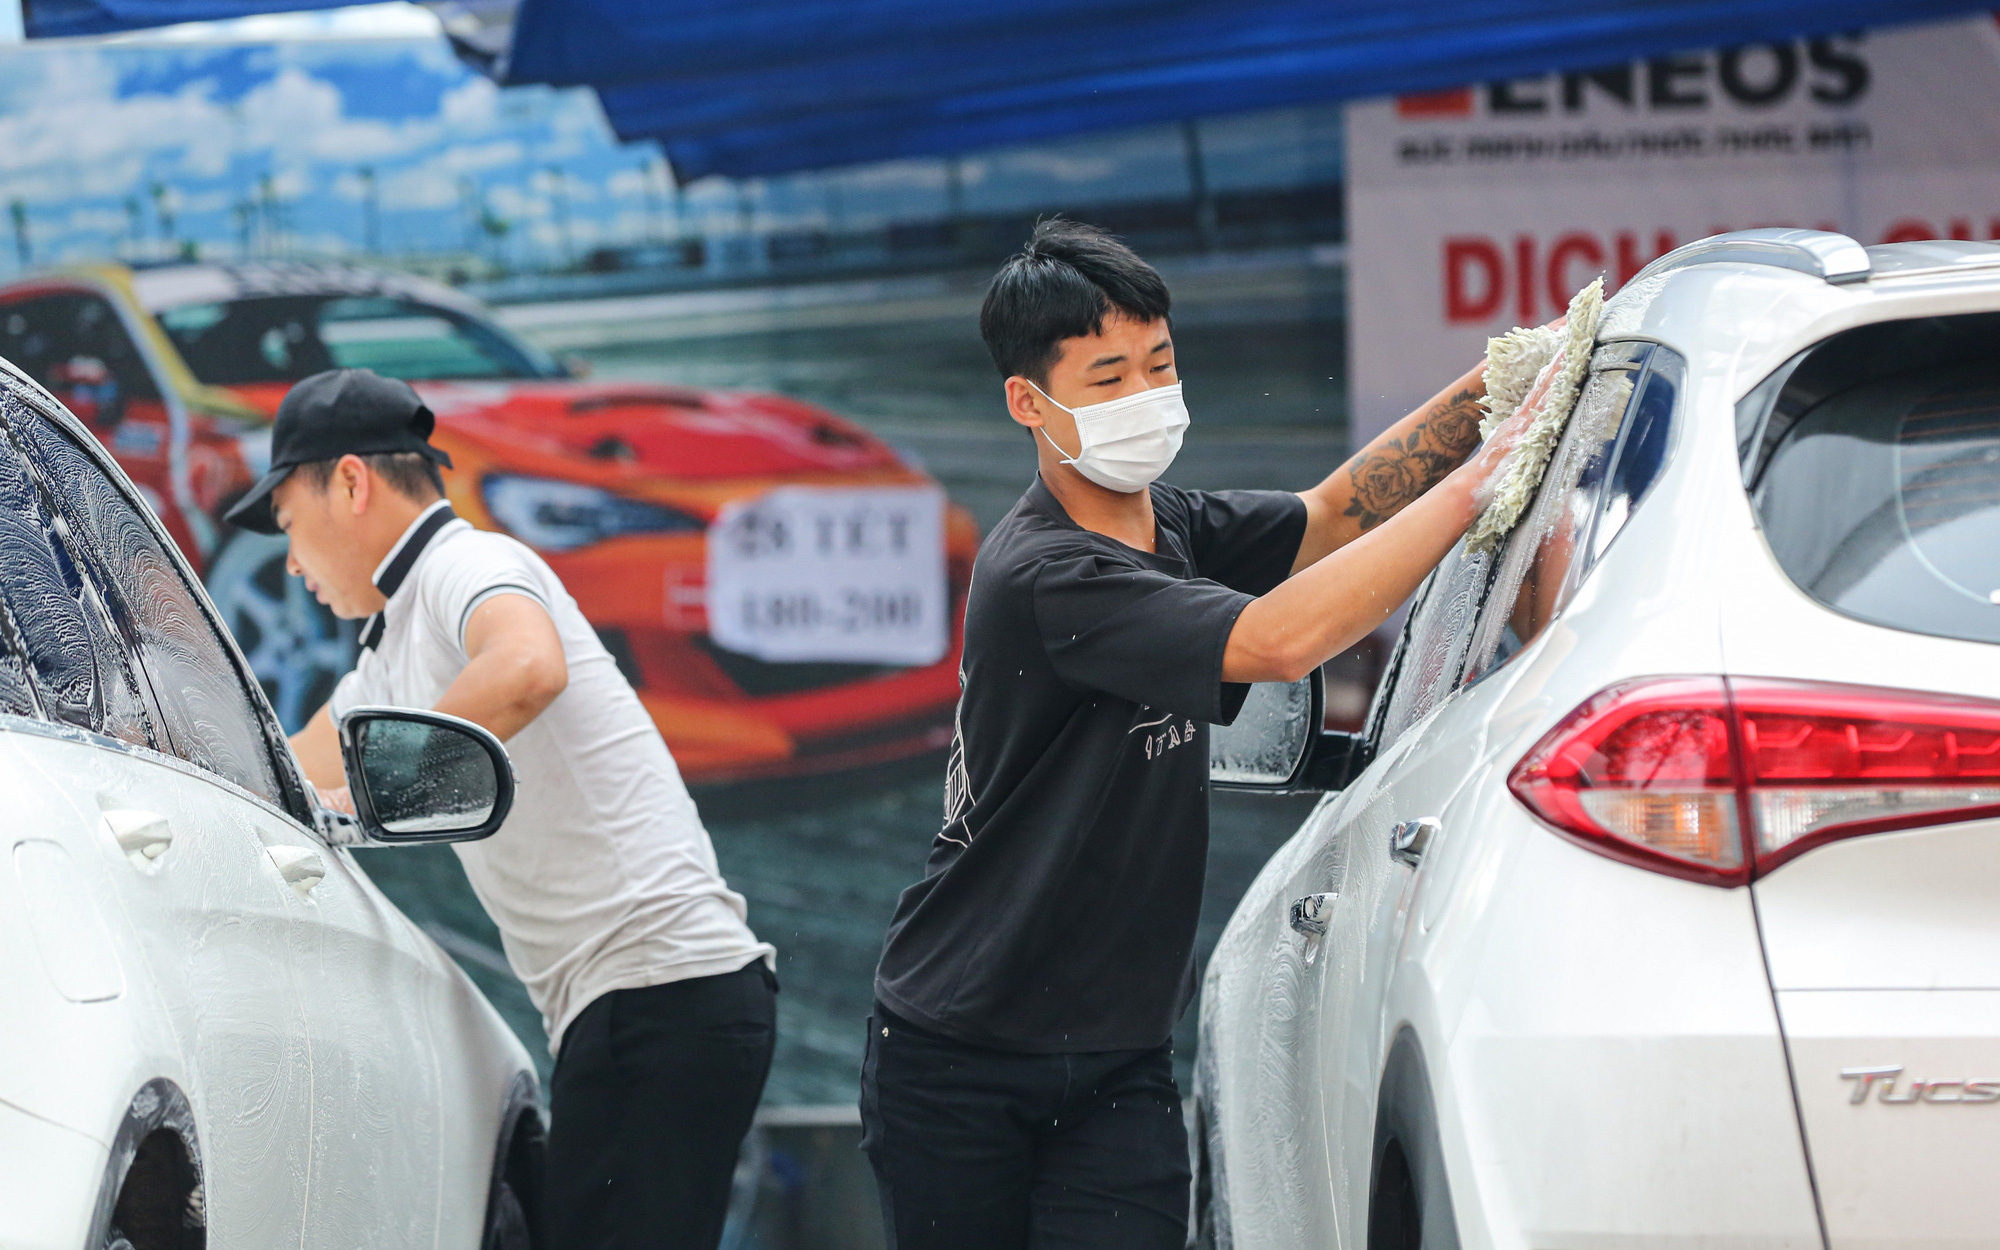 Dịch vụ rửa xe dịp Tết tăng giá chóng mặt, nhiều cơ sở thu về chục triệu đồng mỗi ngày